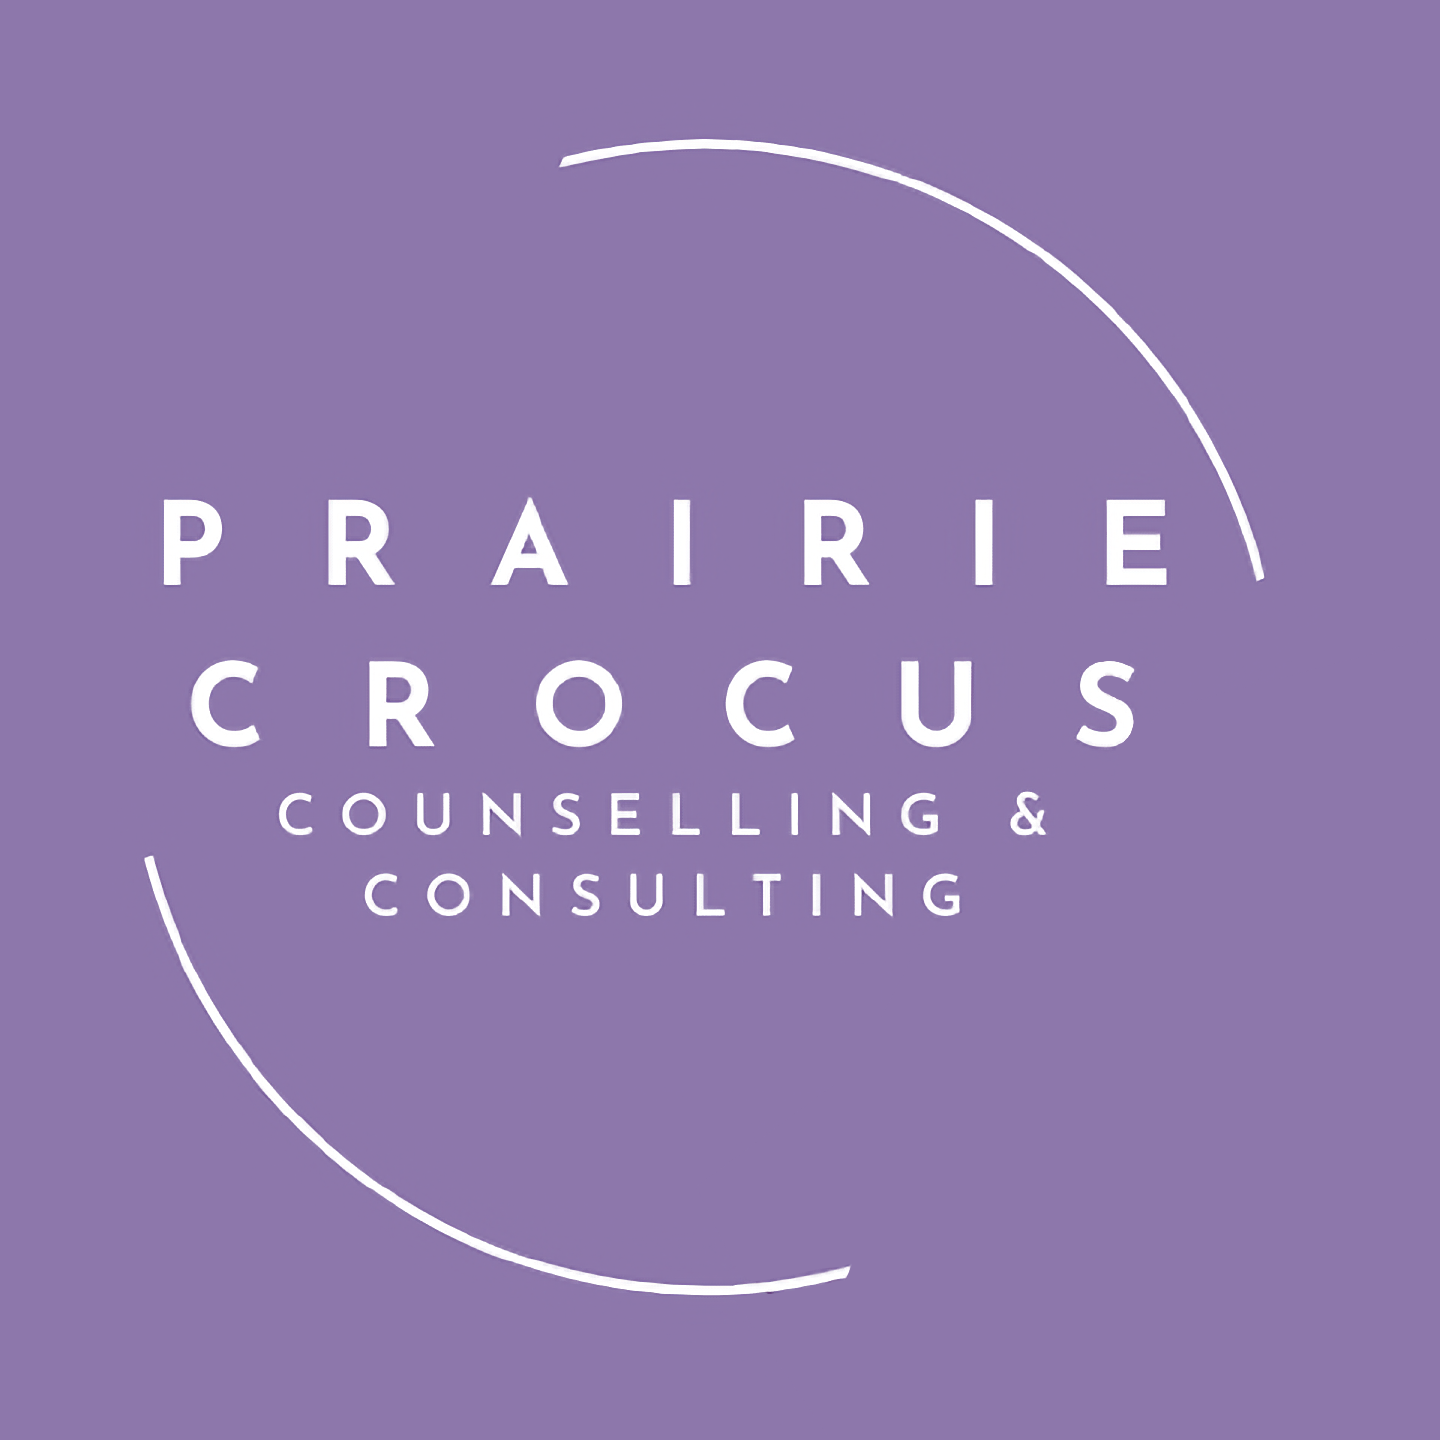 Prairie Crocus Counselling